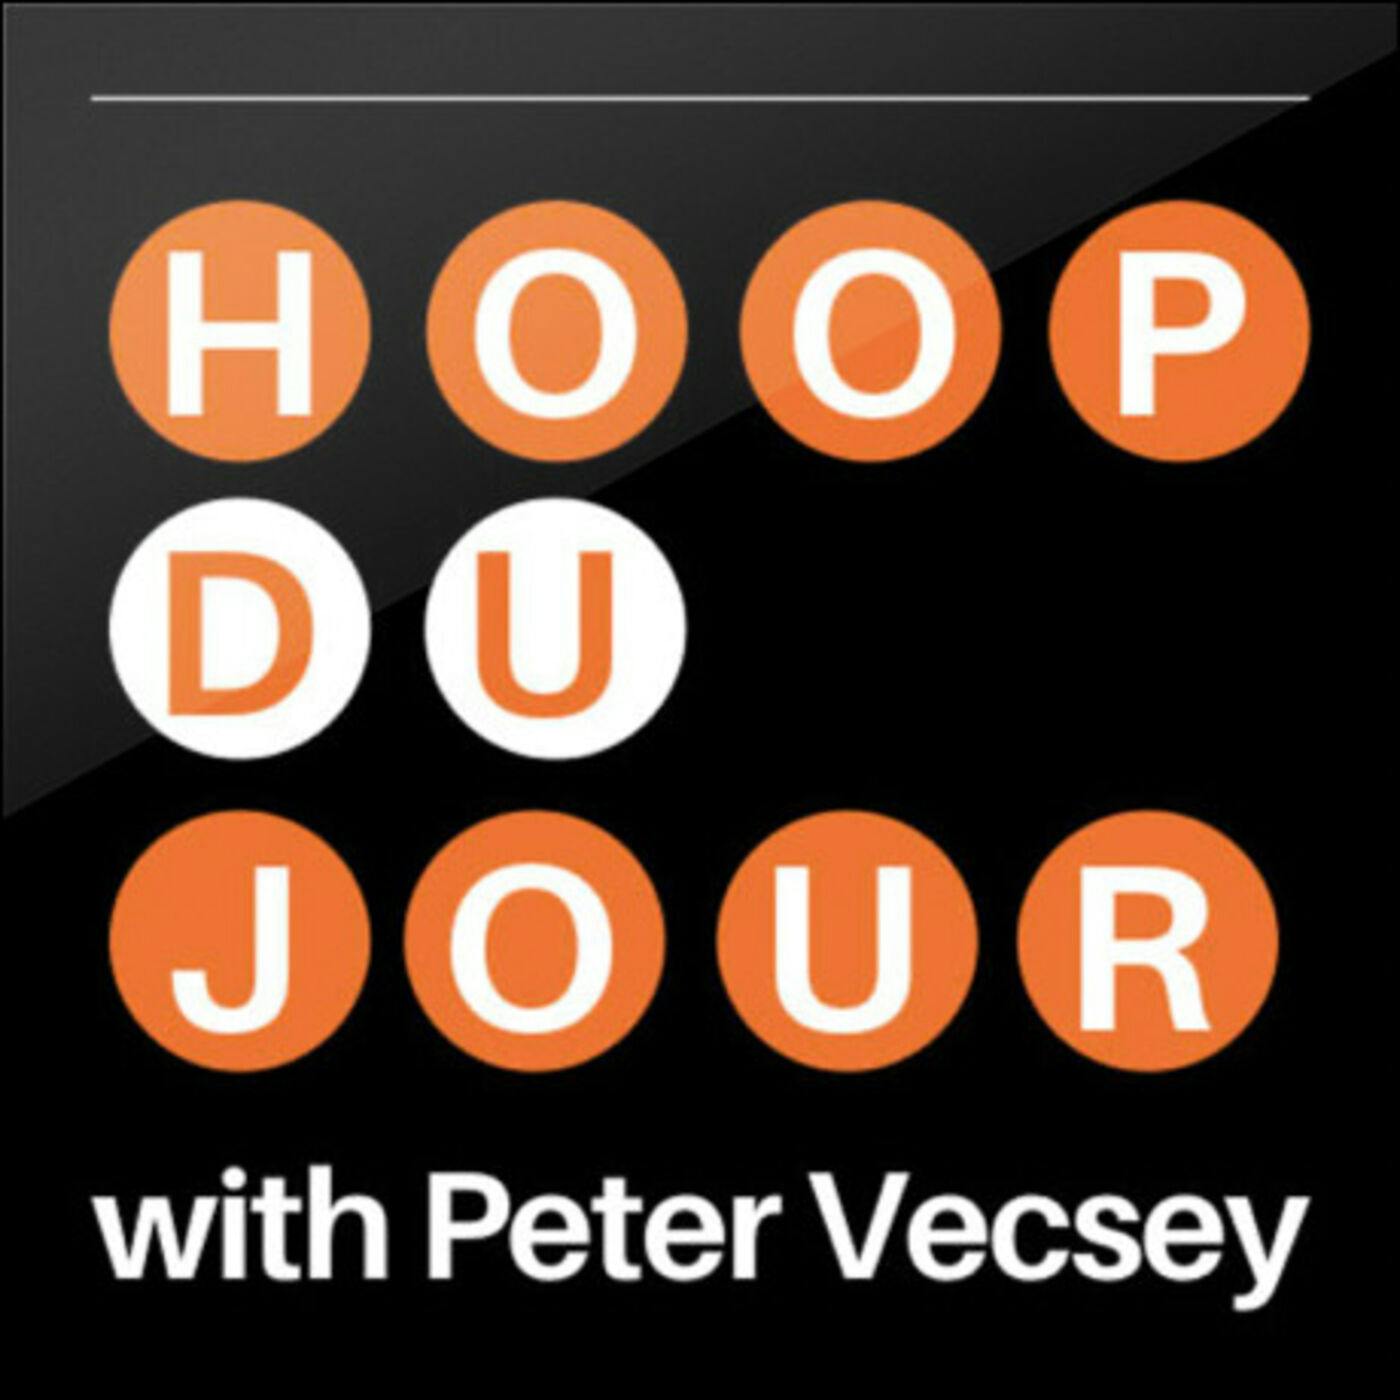 Hoop du Jour with Peter Vecsey - ISIAH THOMAS